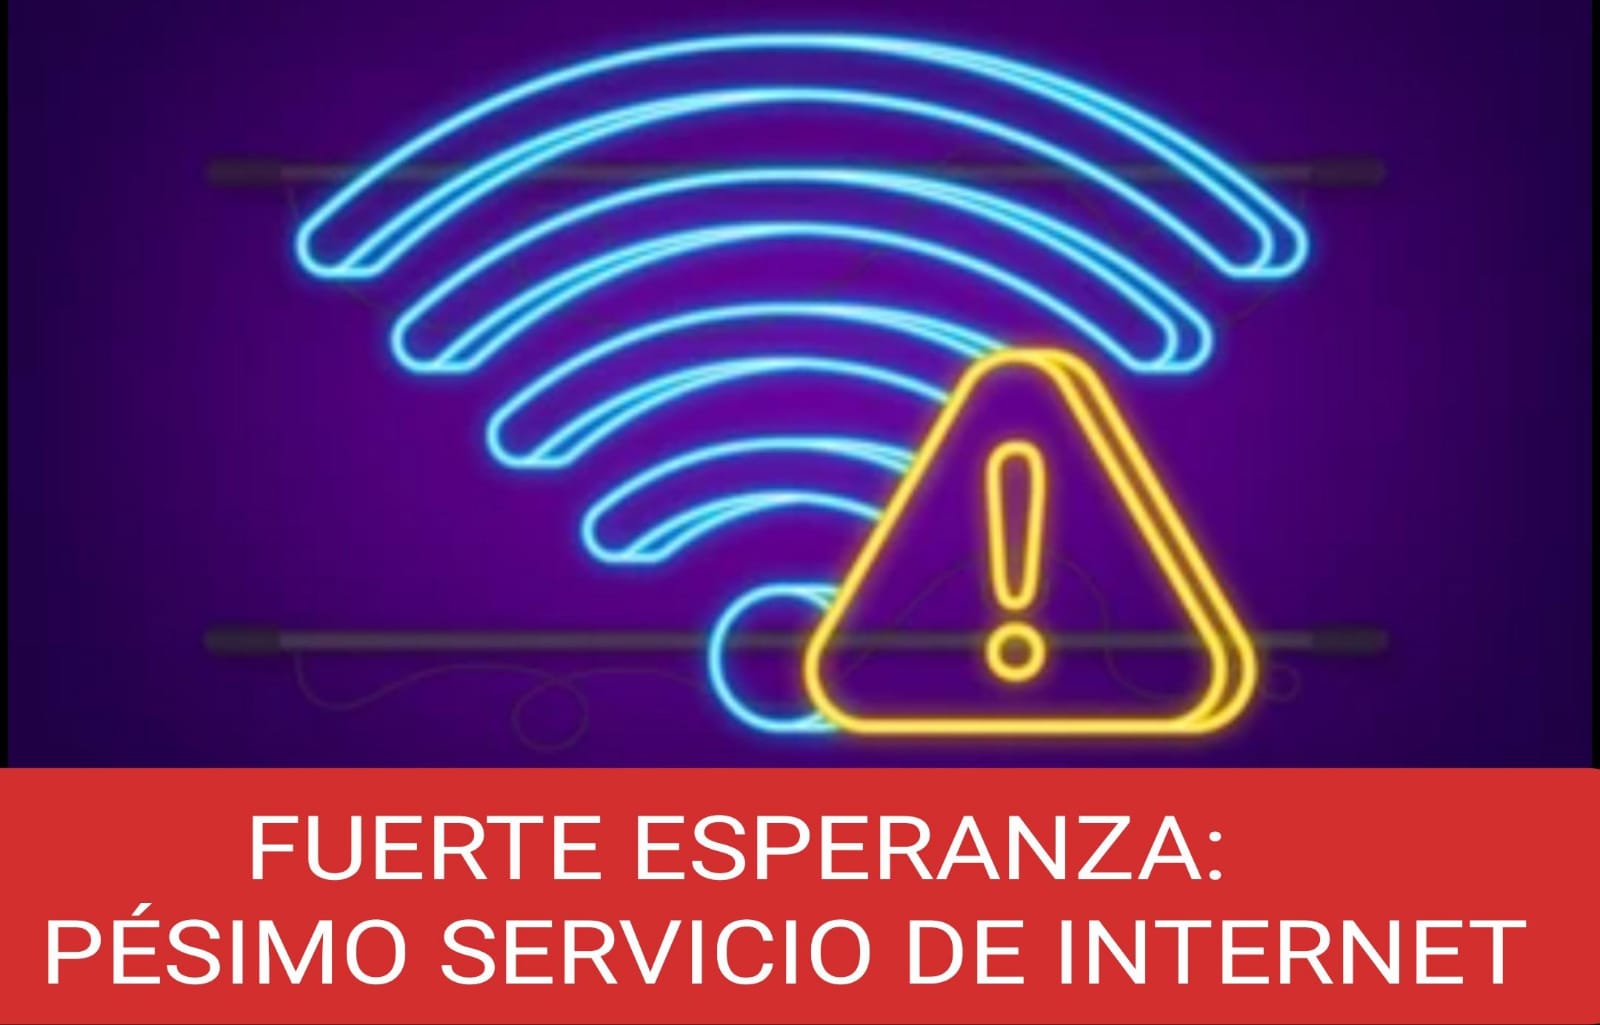 FUERTE ESPERANZA: PÉSIMO SERVICIO DE INTERNET.